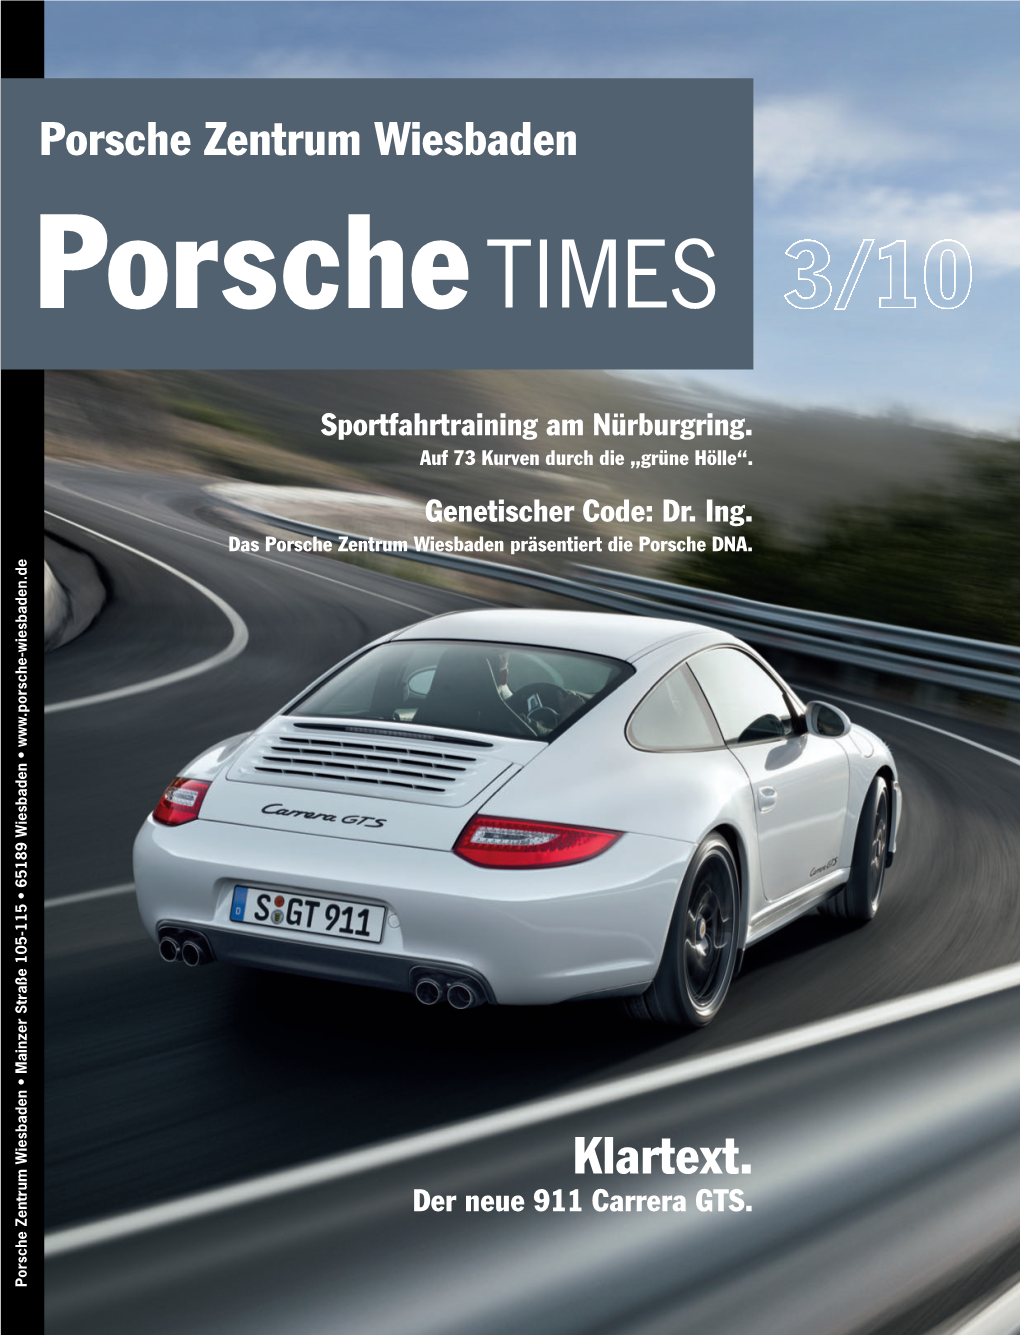 Porschetimes Vorlagedokument 13.11.10 17:13 Seite 2